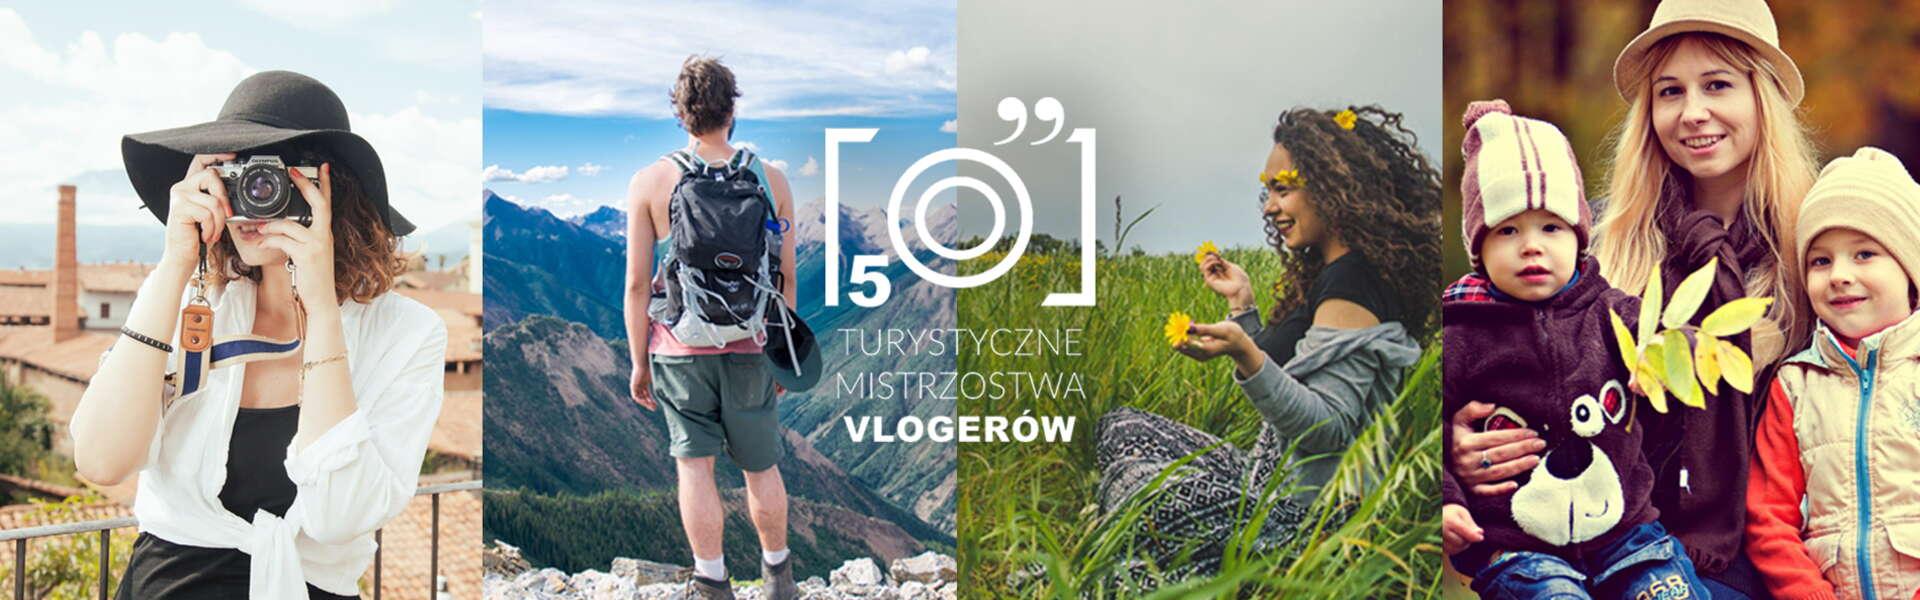 Immagine: Zagłosuj na Małopolskę - V Turystyczne Mistrzostwa Vlogerów!